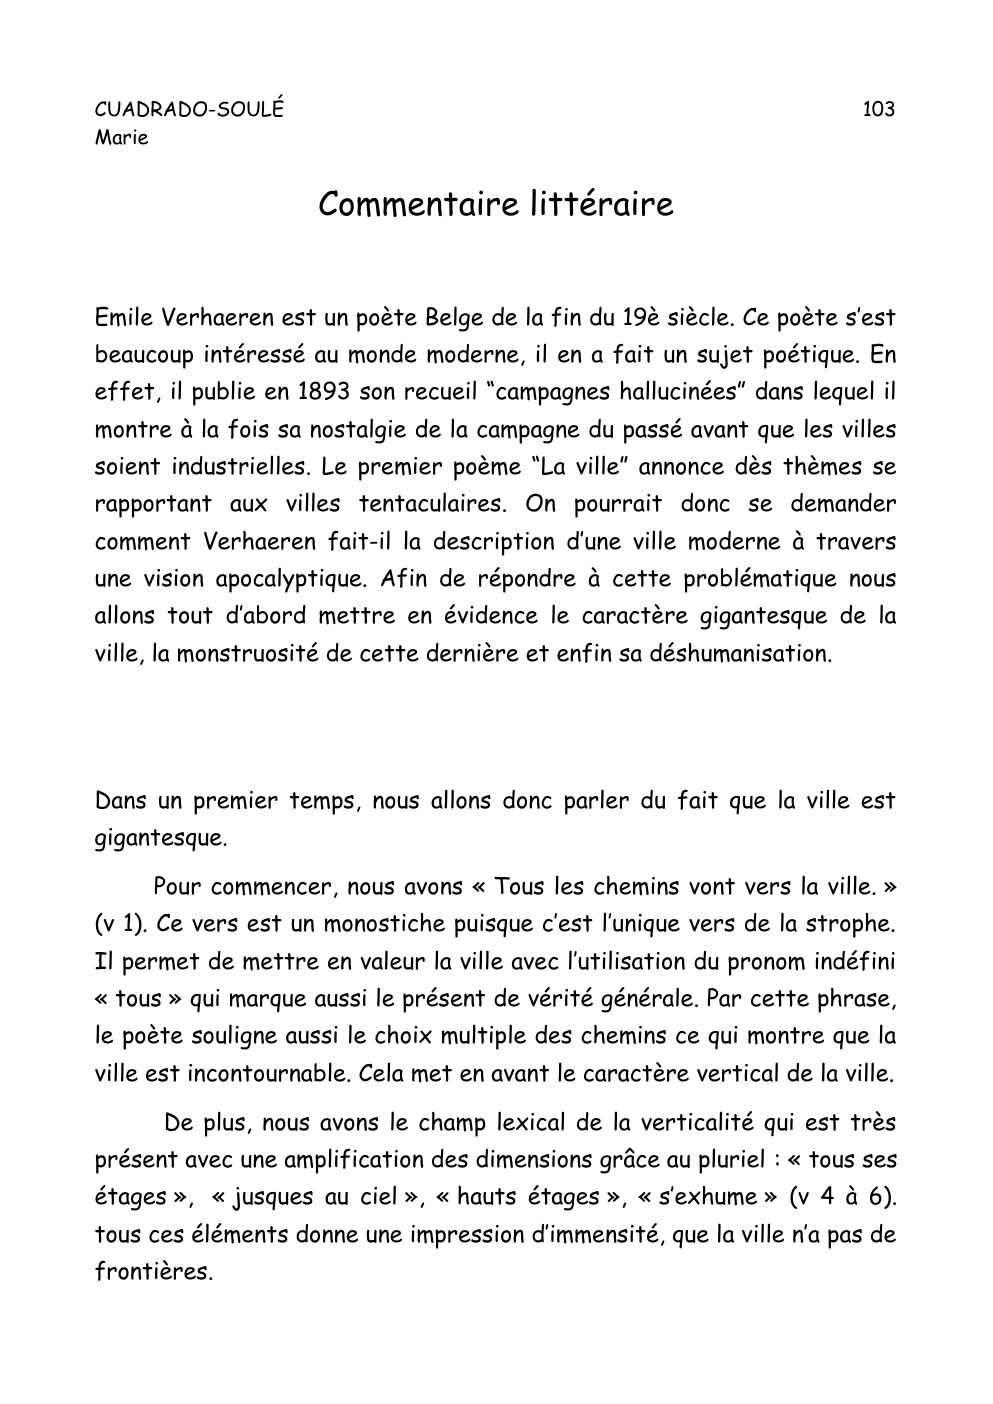 Prévisualisation du document commentaire sur la ville de Emile Verhaeren